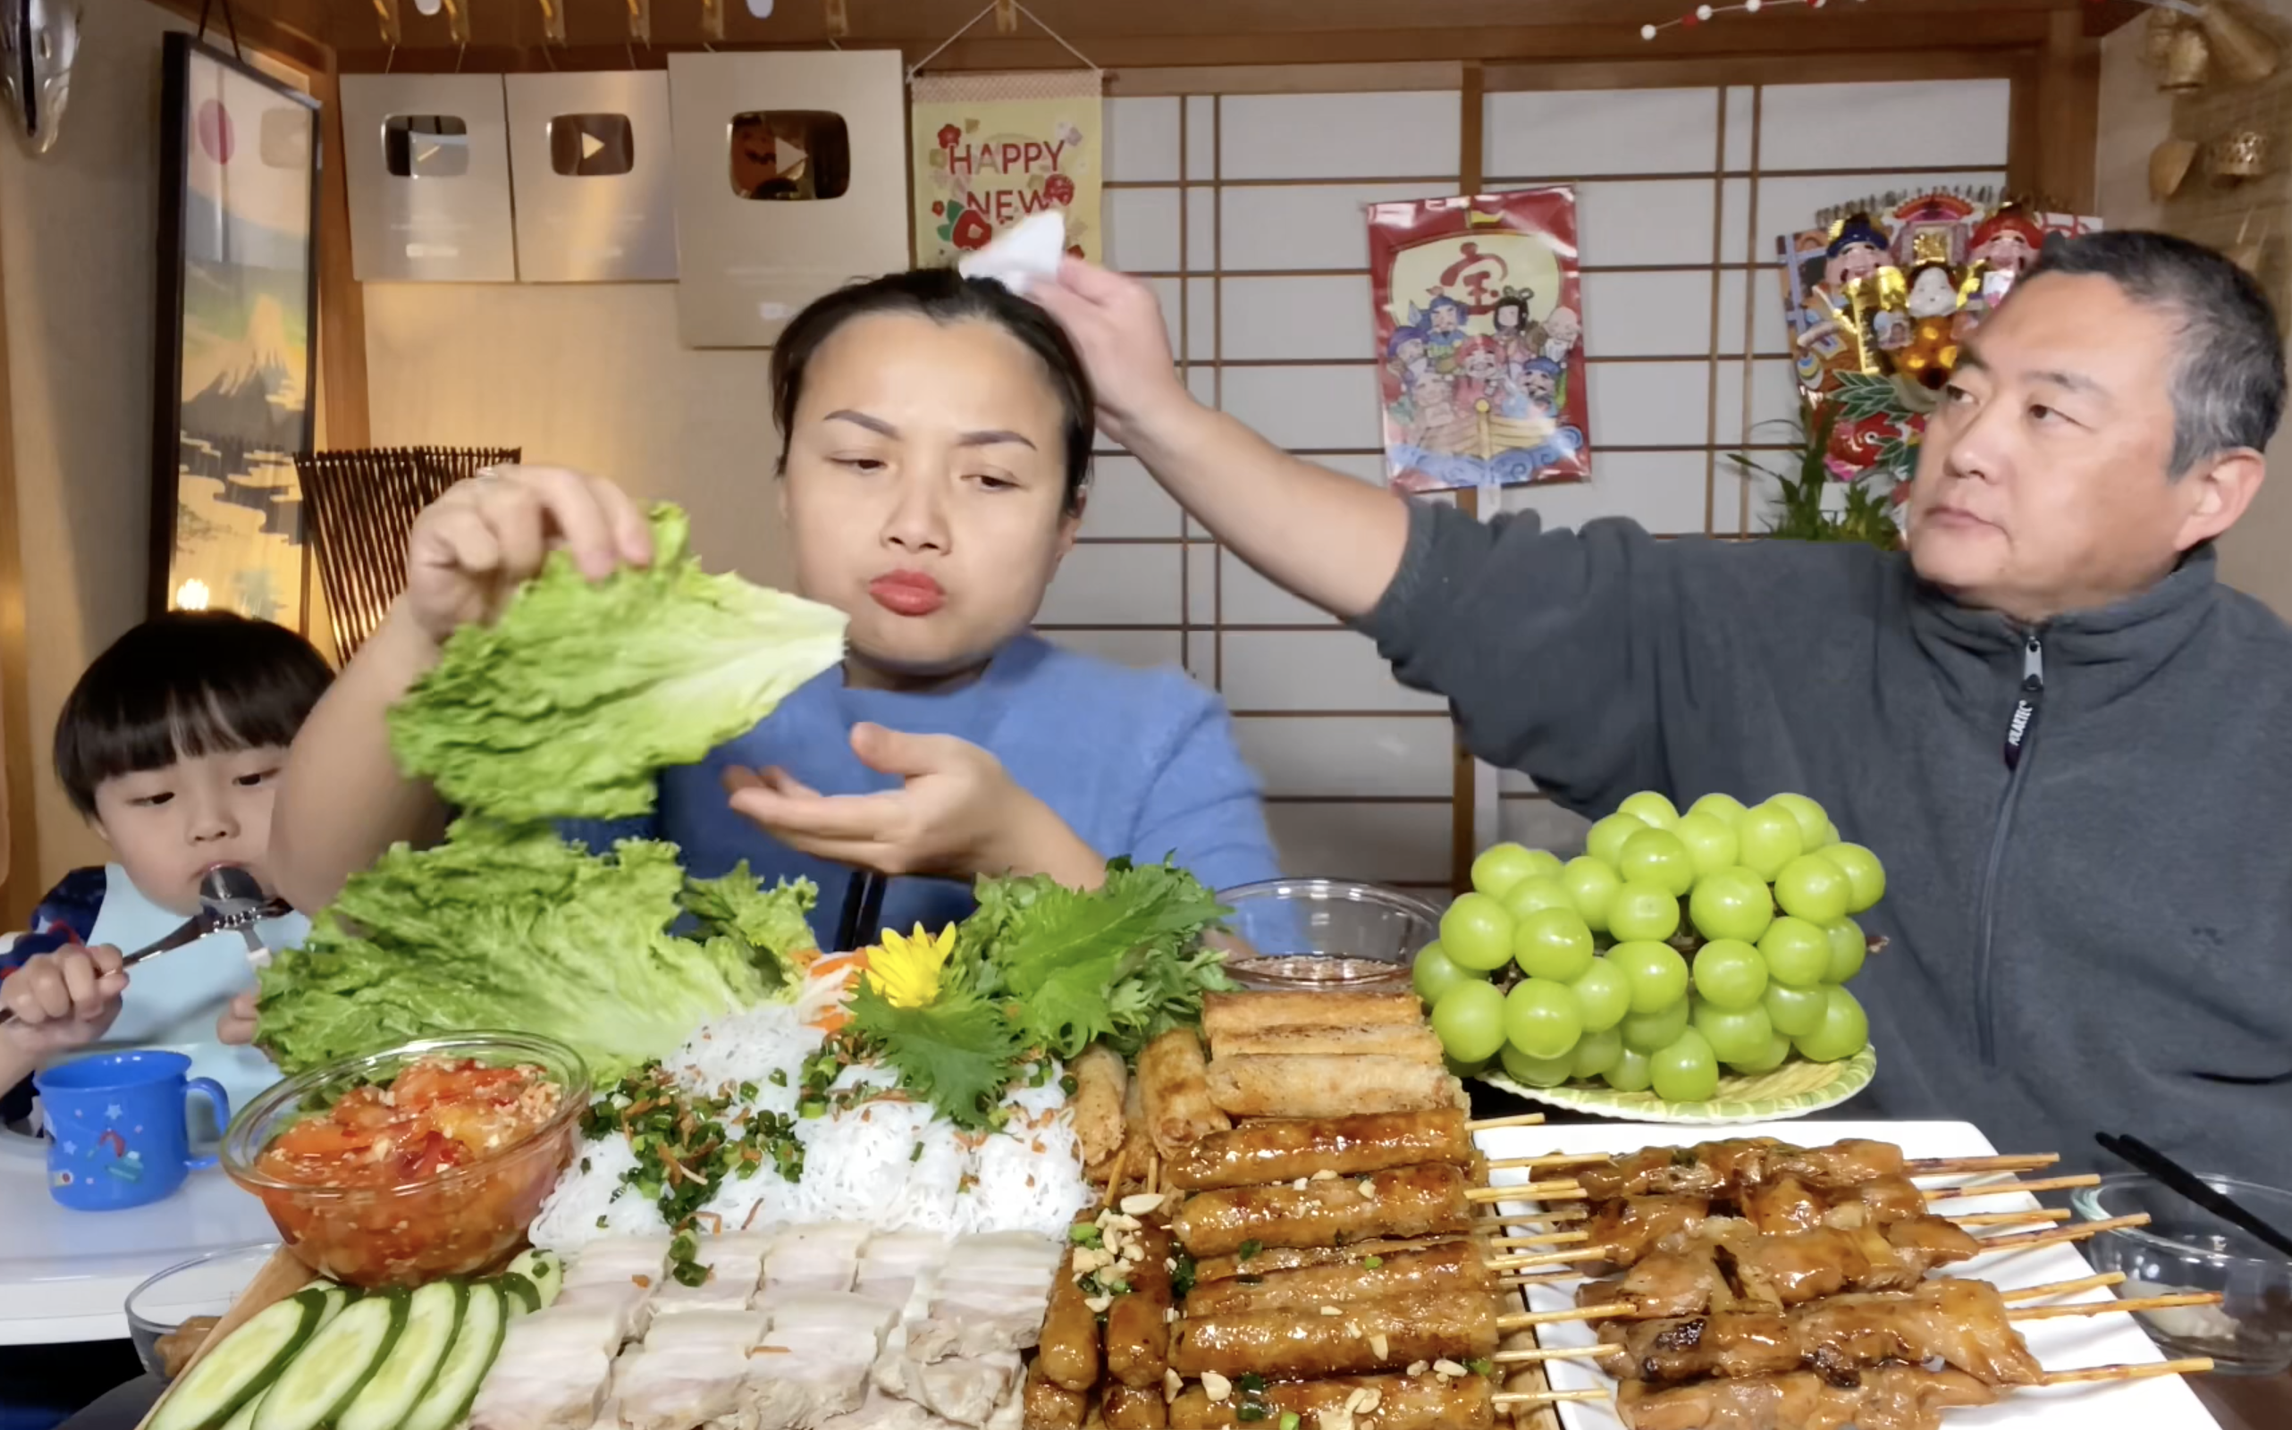 Quỳnh Trần JP đăng vlog hạnh phúc với chồng Nhật, tiết lộ cách giải quyết mâu thuẫn sau khi cãi vã